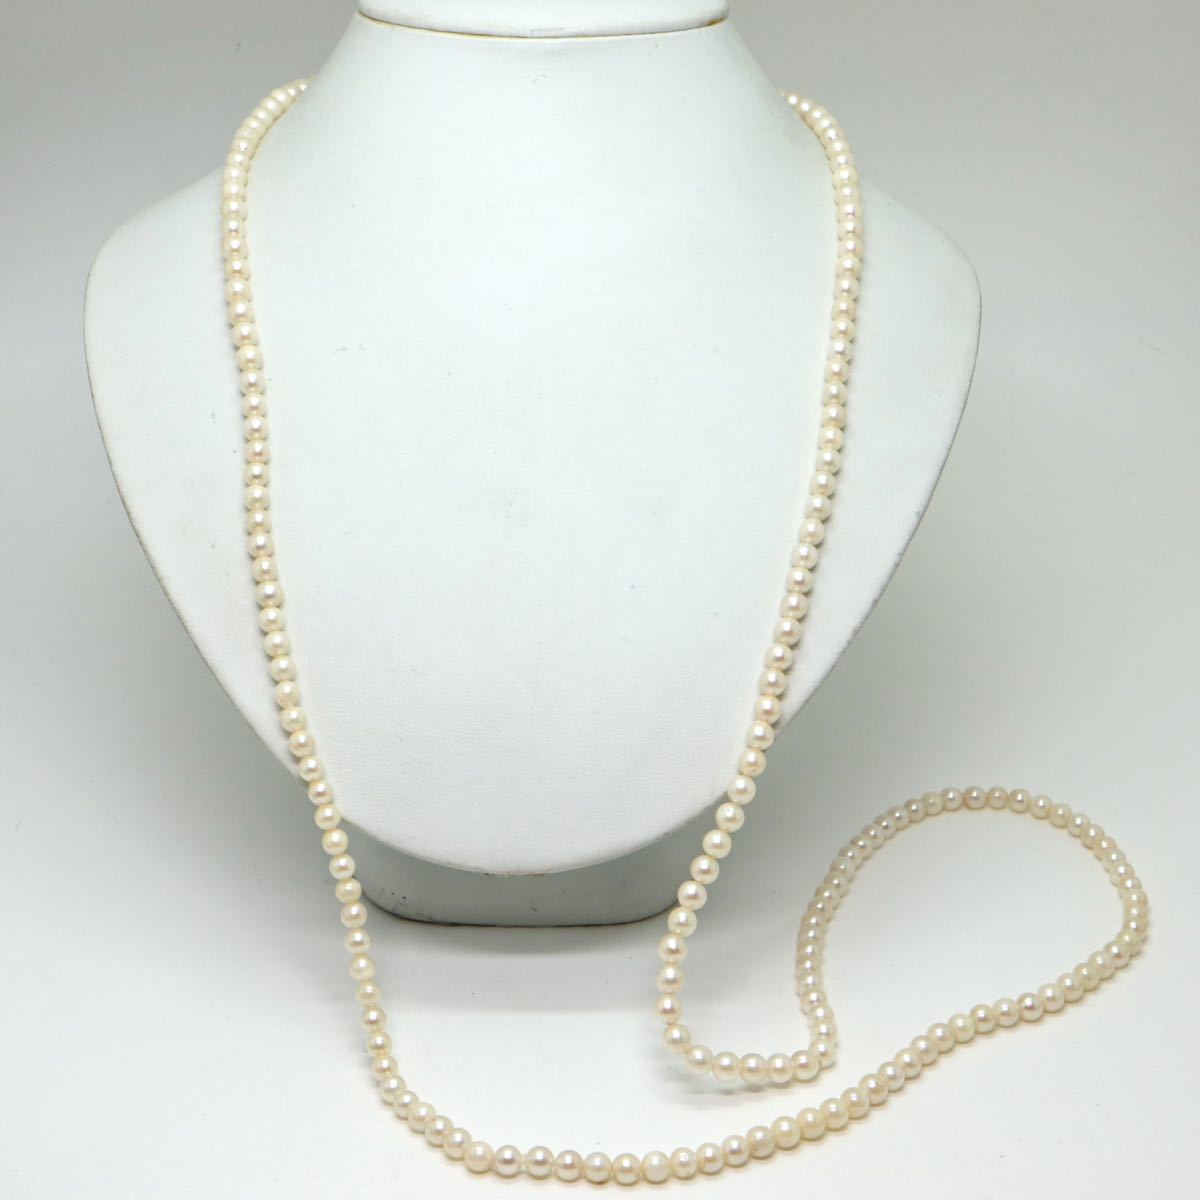 ソーティング付き!!《アコヤ本真珠ロングネックレス》D 5.5-6.0mm珠 49.8g 106.5cm pearl necklace ジュエリー jewelry DE0/EA0_画像4